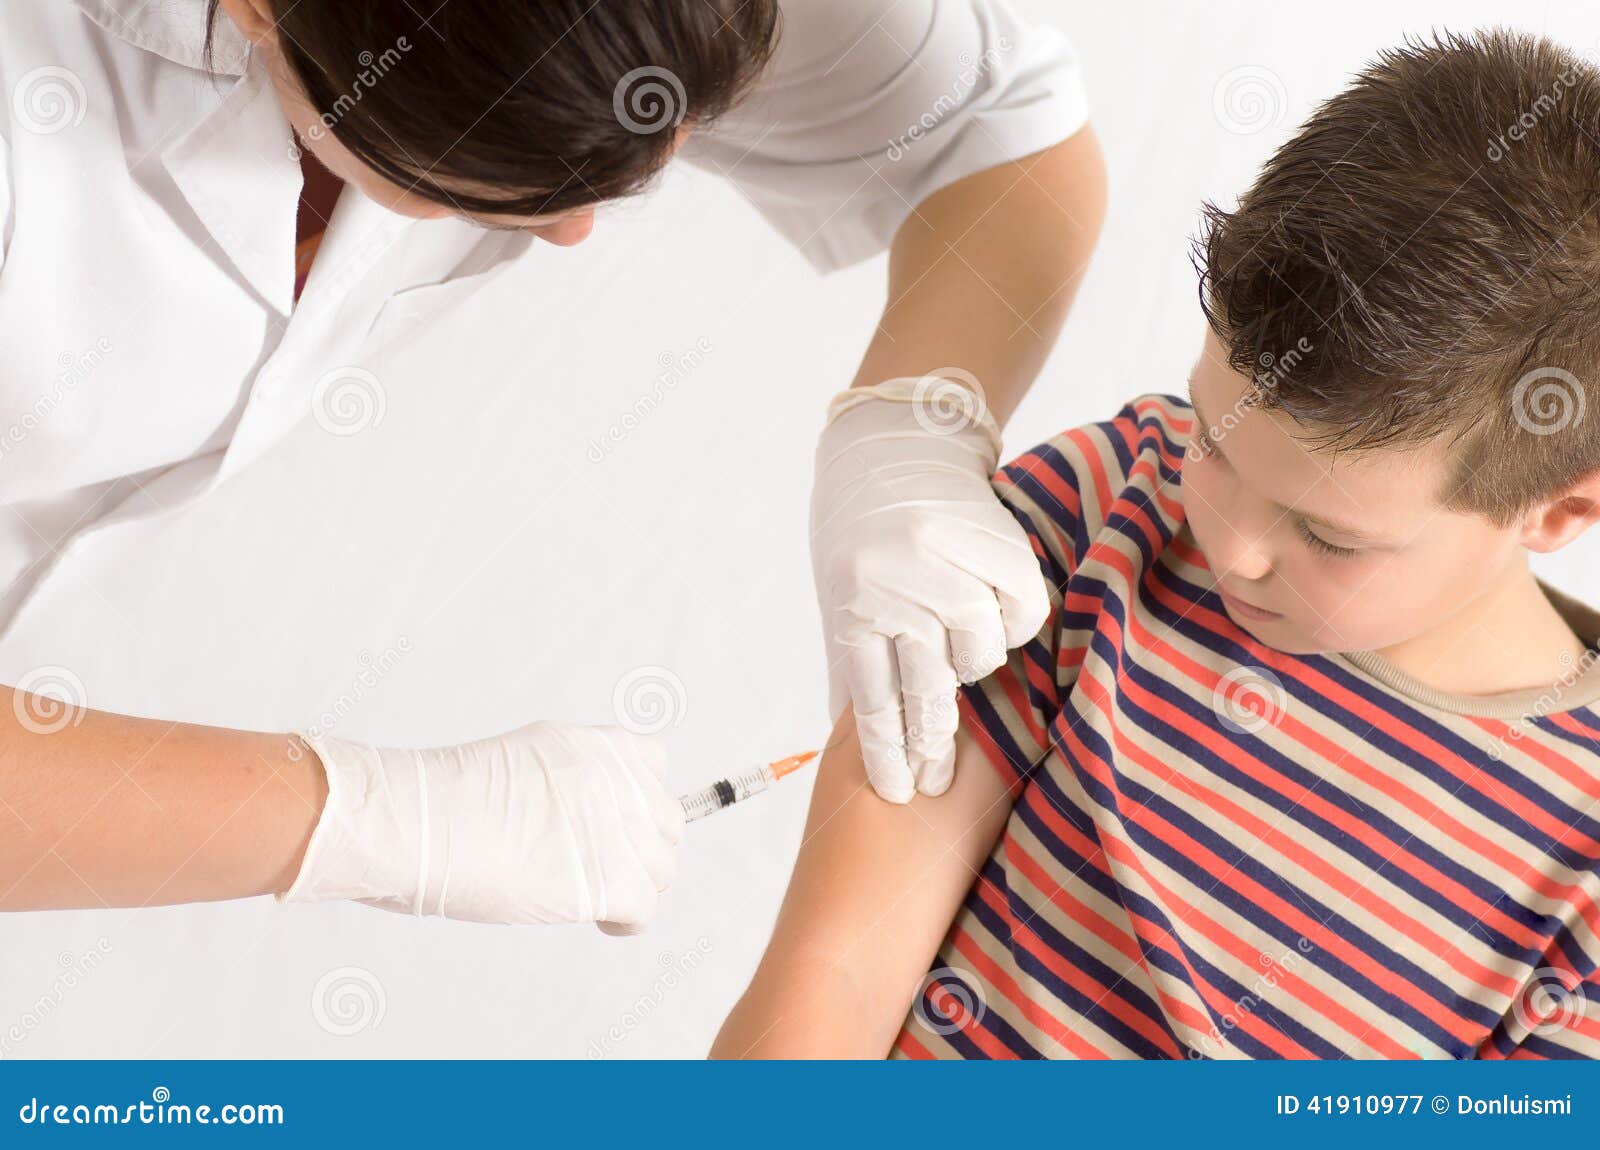 Вакцина от туляремии